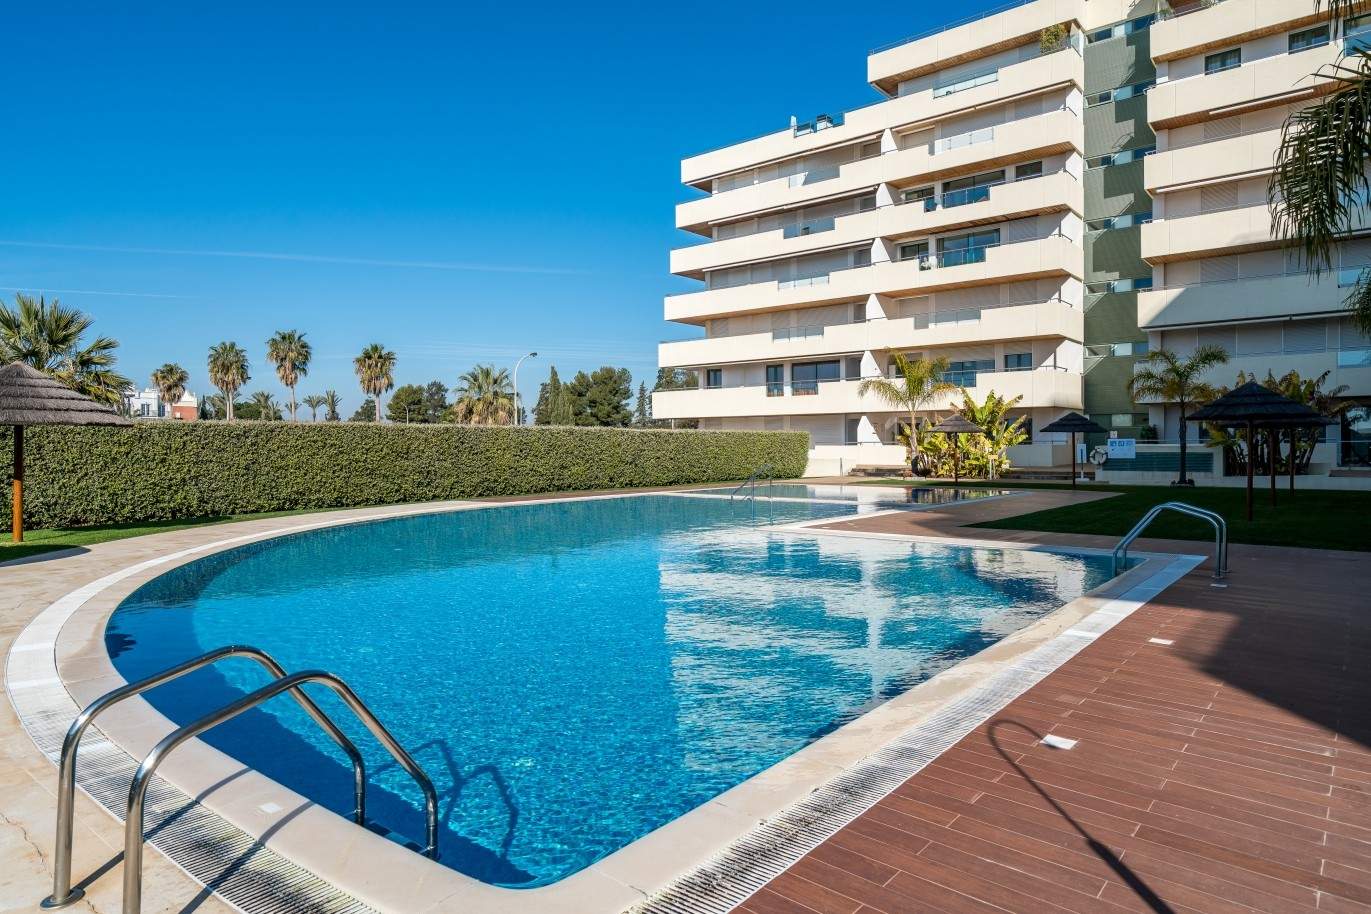 Venta de apartamento, cerca de la playa, Vilamoura, Algarve, Portugal_74091